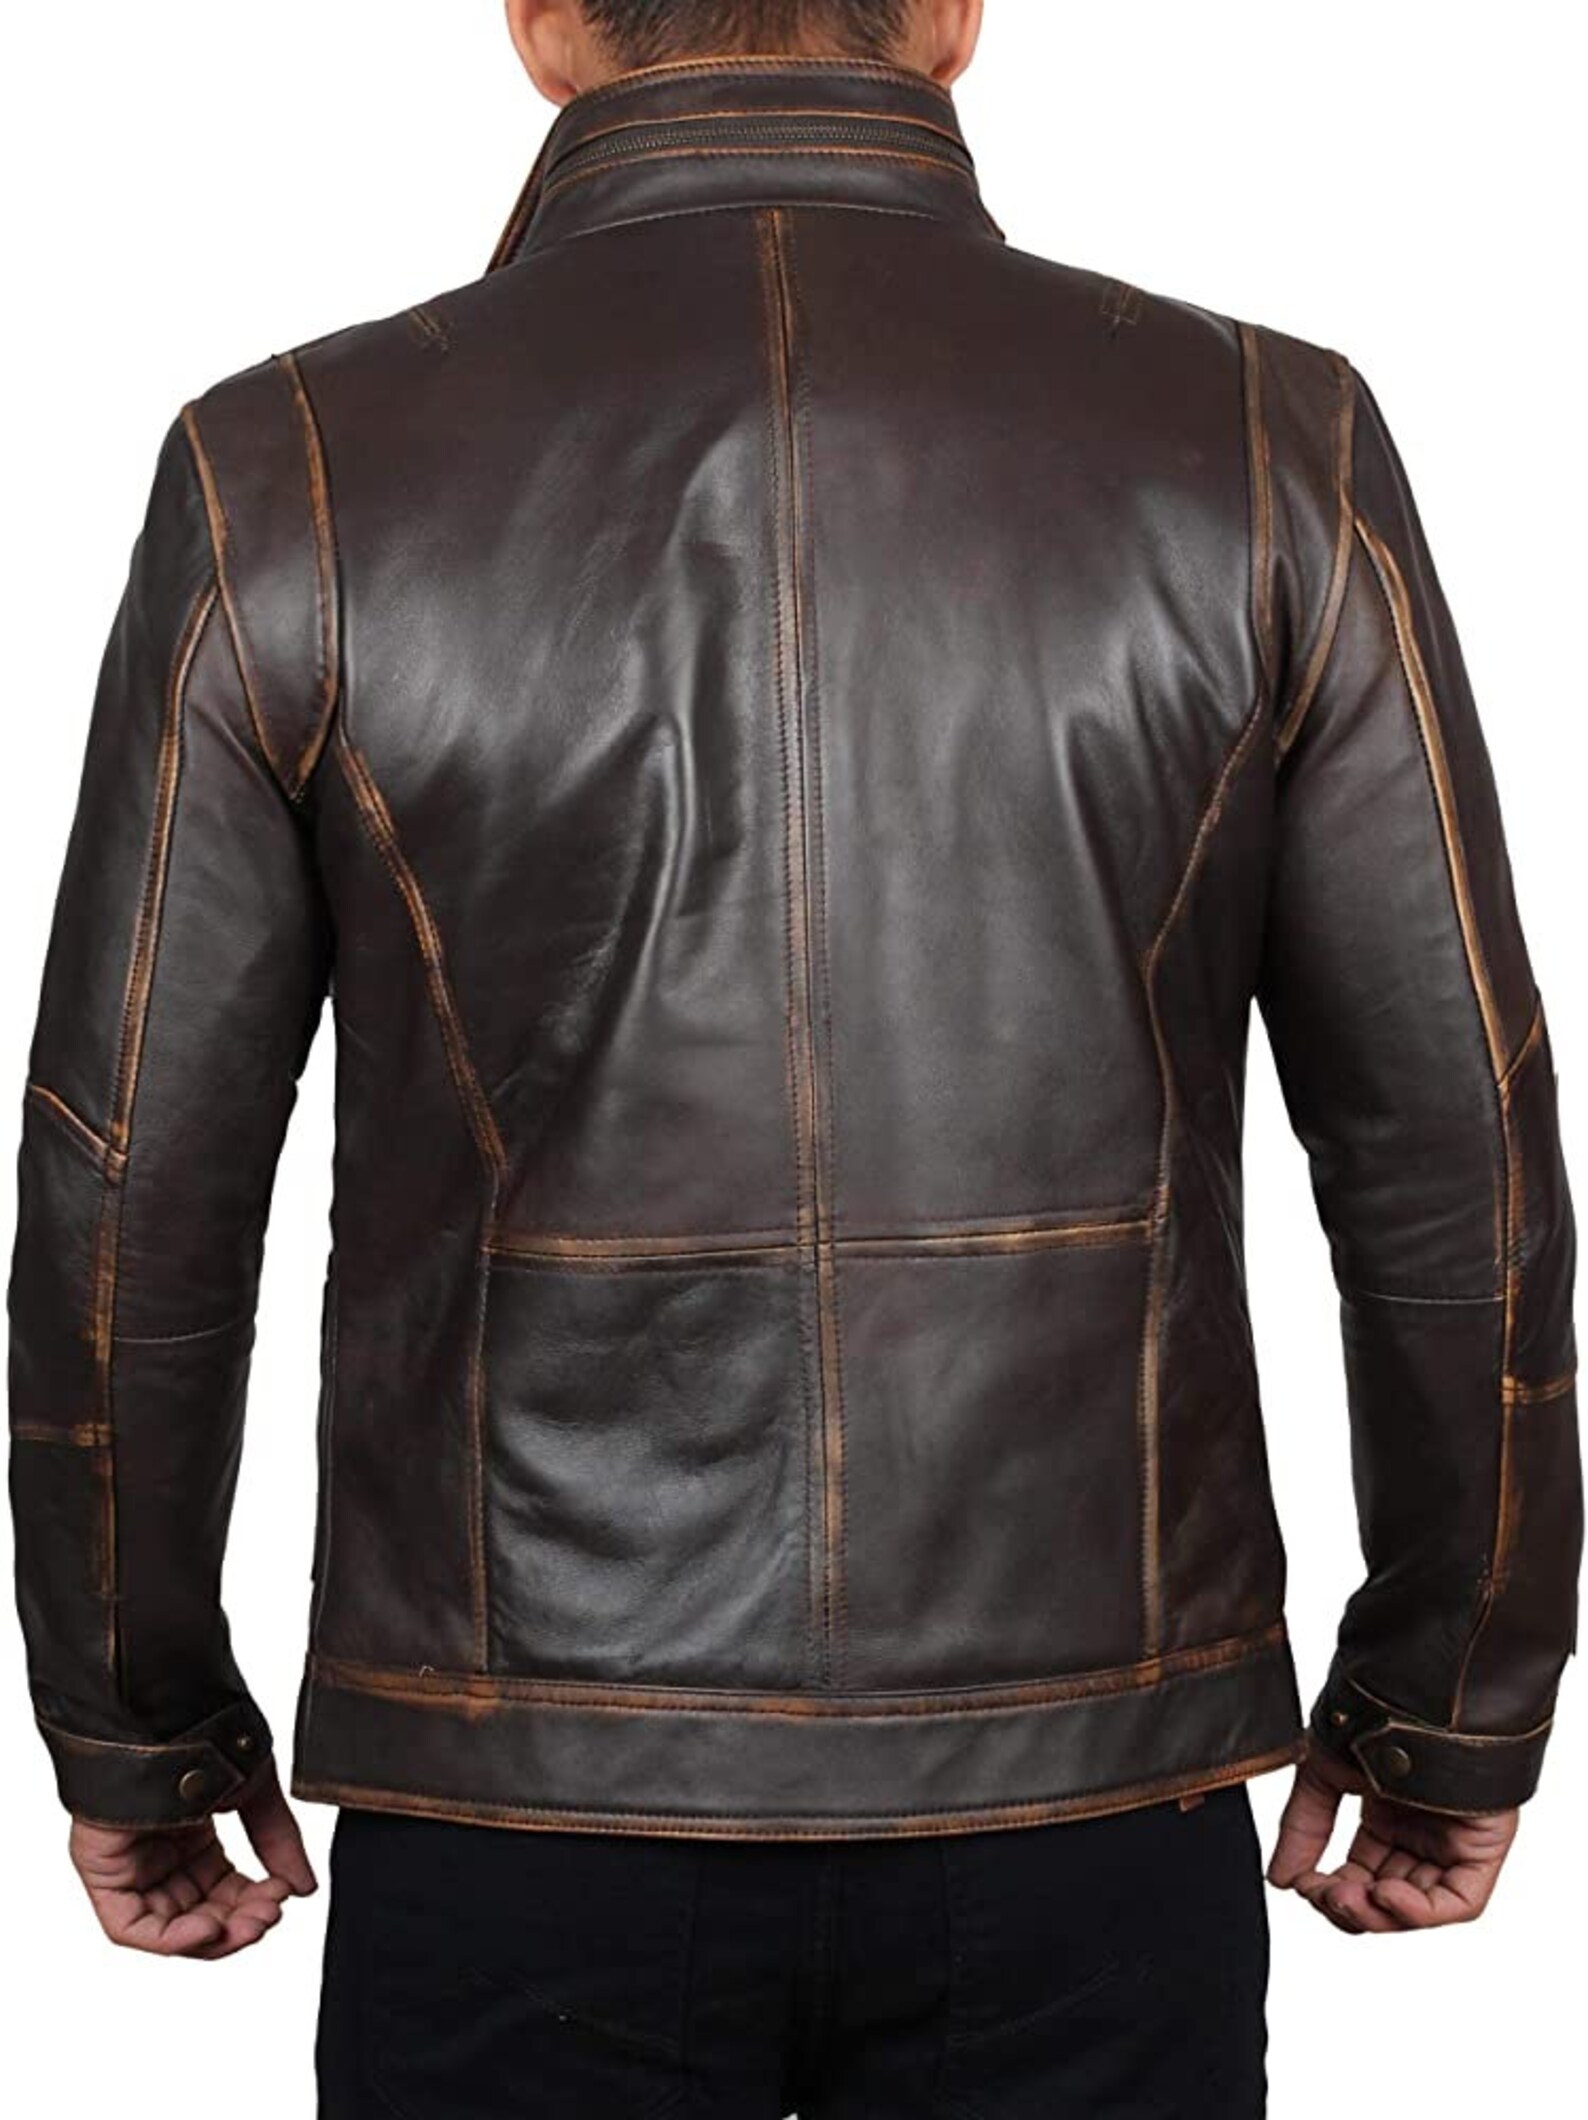 Men Biker Leather Jacket Hand Made Brown Leather Jacket - Etsy